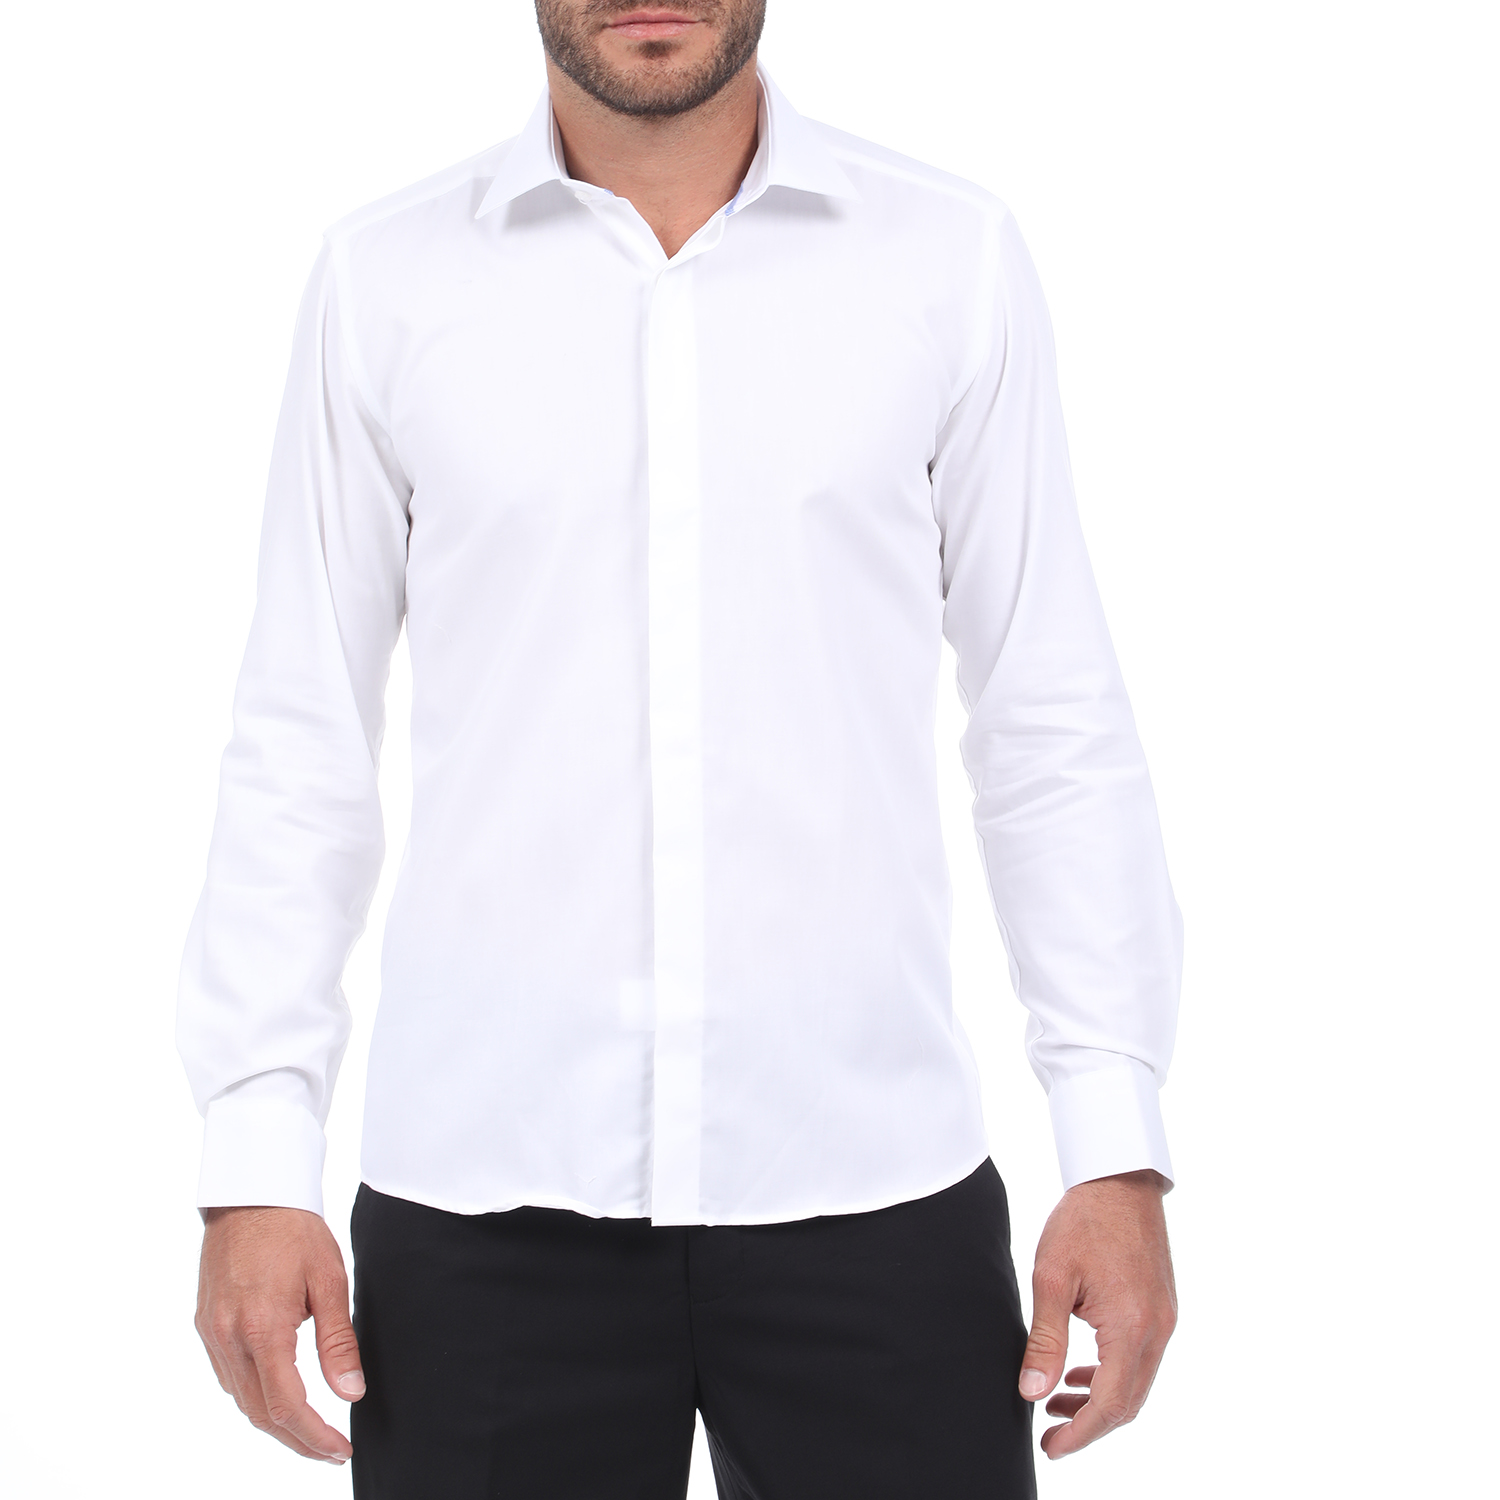 Ανδρικά/Ρούχα/Πουκάμισα/Μακρυμάνικα MARTIN & CO - Ανδρικό πουκάμισο MARTIN & CO SLIM NON IRON λευκό